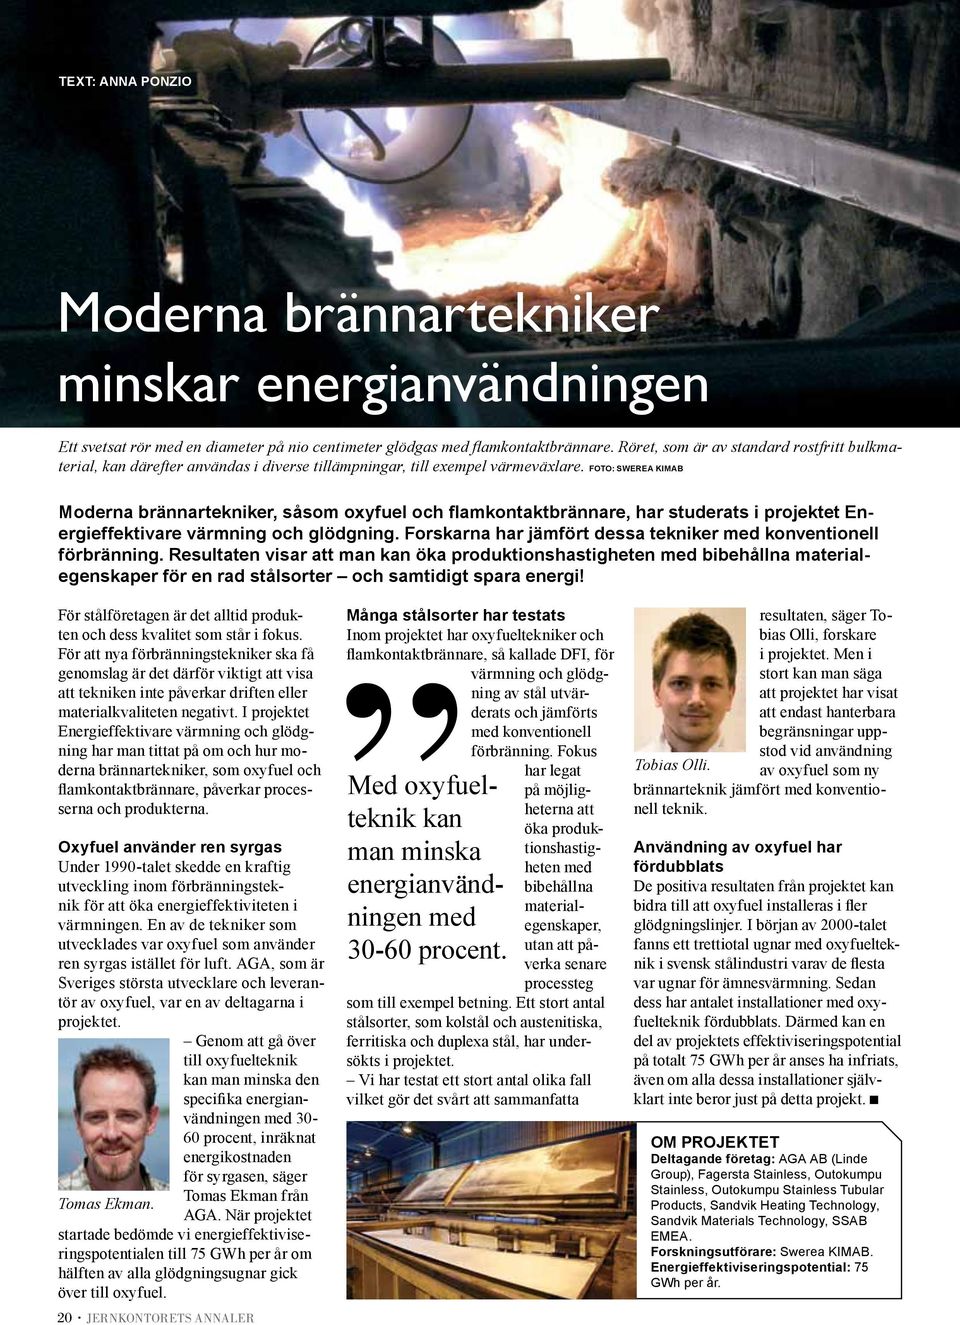 Foto: Swerea Kimab Moderna brännartekniker, såsom oxyfuel och flamkontaktbrännare, har studerats i projektet Energieffektivare värmning och glödgning.